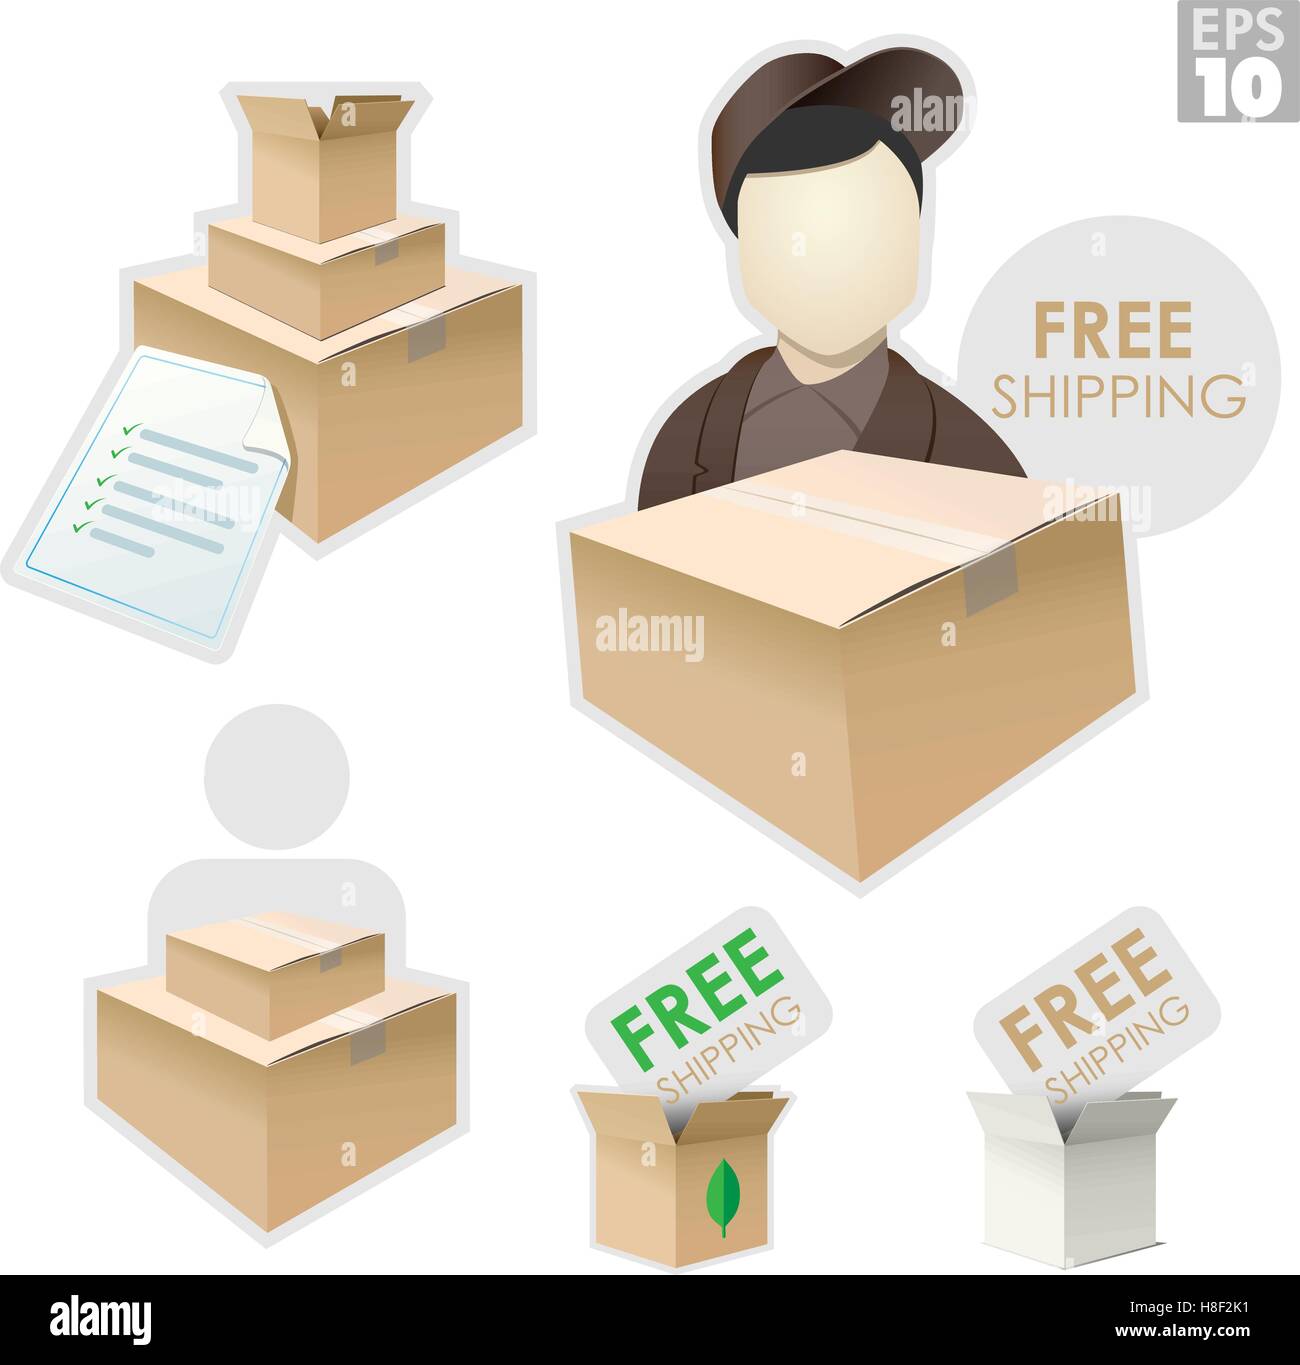 Delivery man avec boîte d'expédition, facture, liste de paquets avec livraison gratuite Illustration de Vecteur